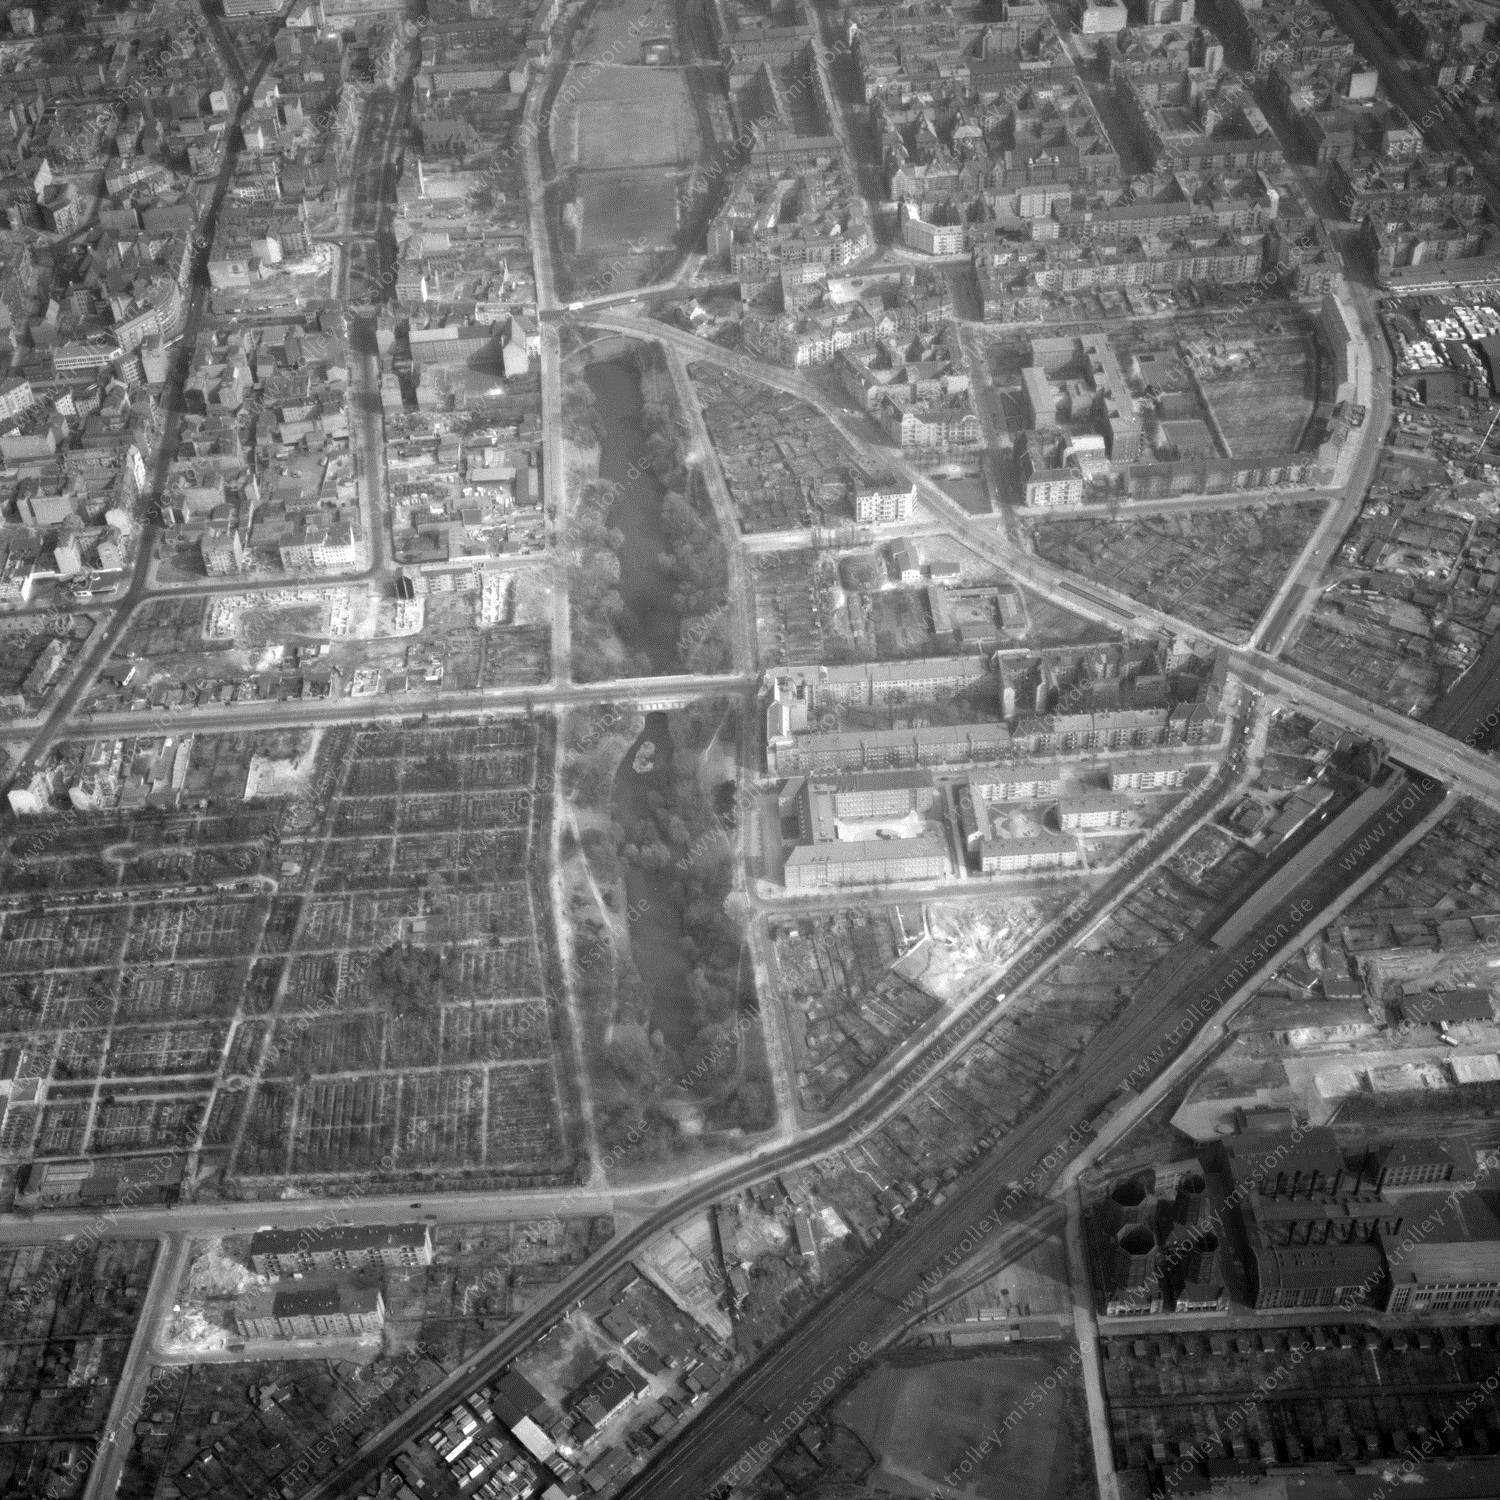 Alte Fotos und Luftbilder von Berlin - Luftbildaufnahme Nr. 02 - Historische Luftaufnahmen von West-Berlin aus dem Jahr 1954 - Flugstrecke Charlie